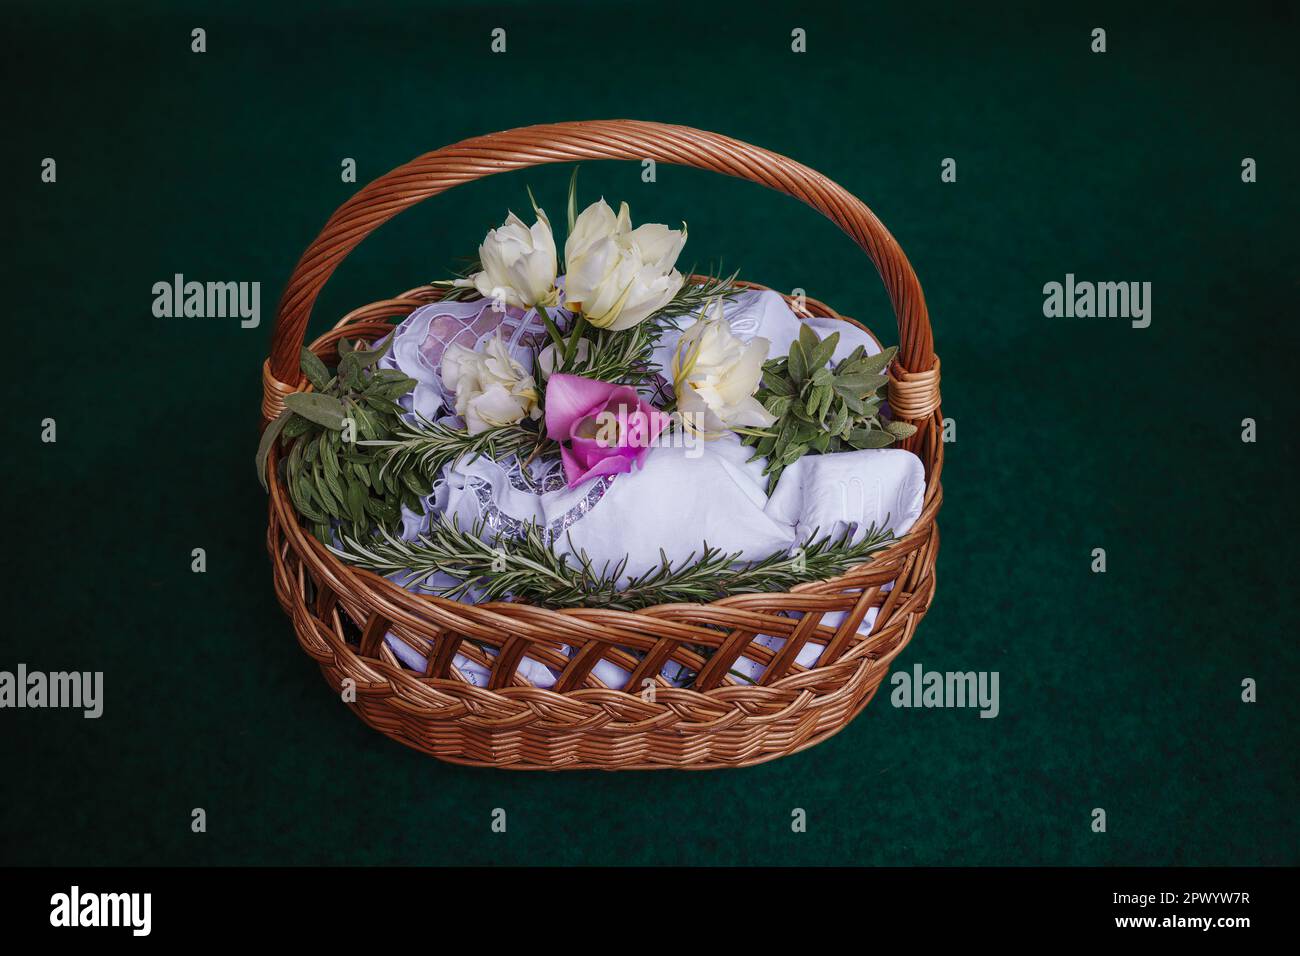 Cestino pasquale su sfondo turchese, decorato con fiori e contenente cibi pasquali, pronto per essere portato in chiesa per la benedizione pasquale Foto Stock